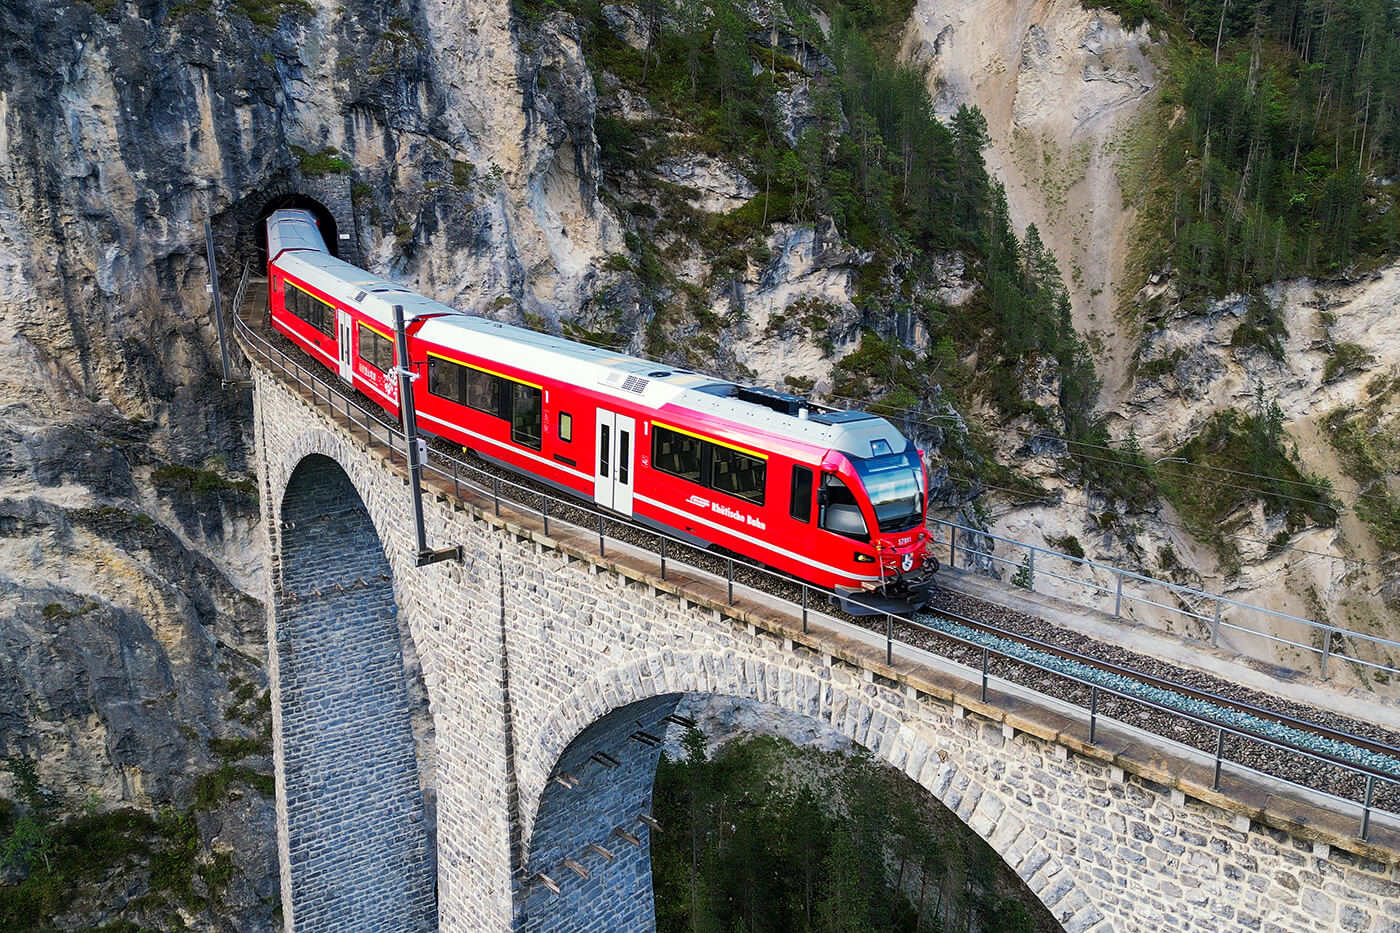 Landwassar Viaduct, Filisur, Switzerland